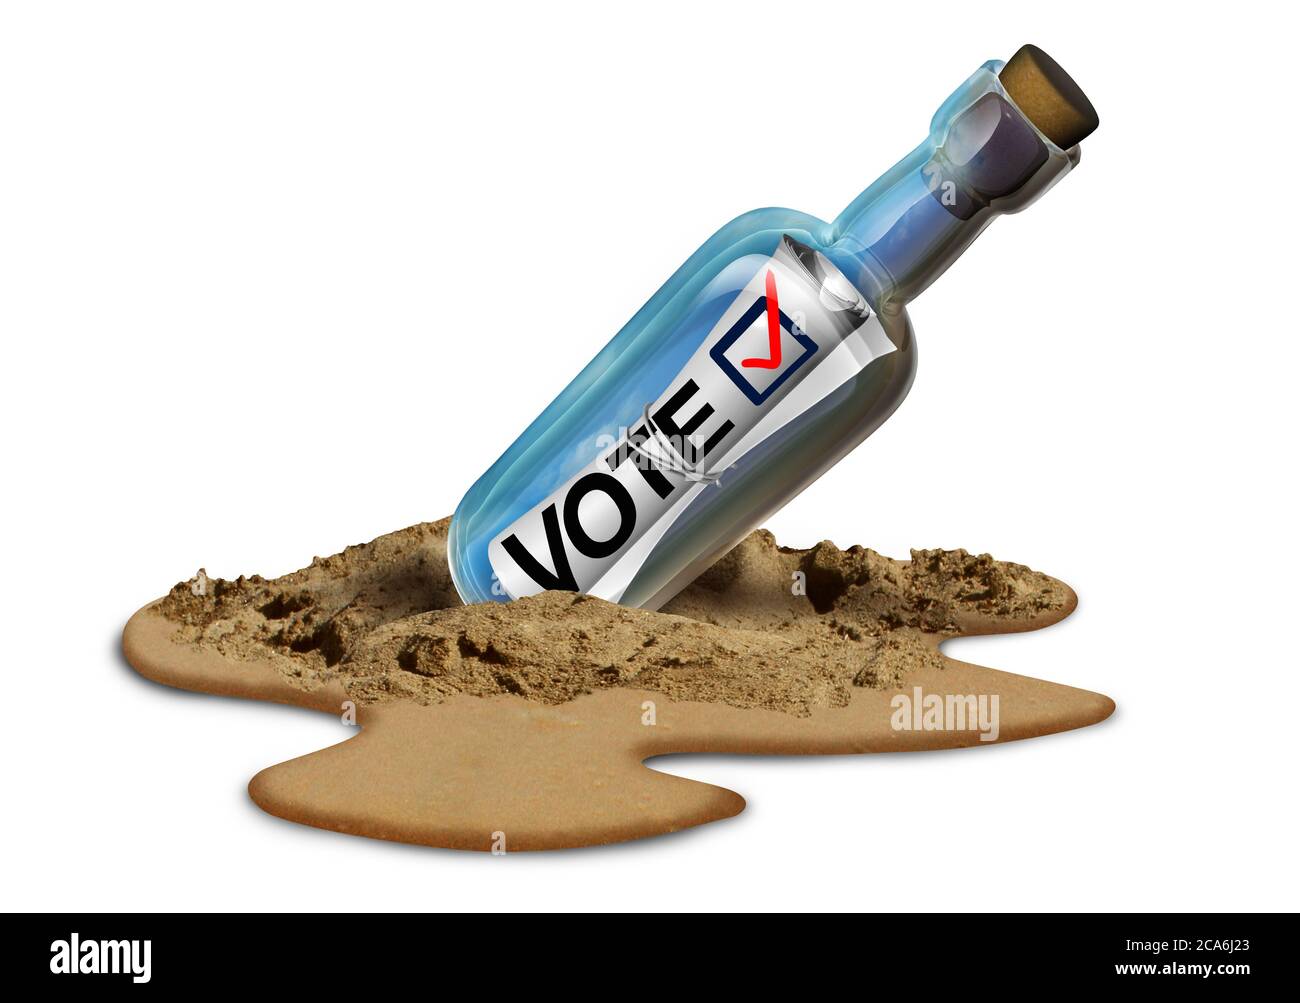 Mail in Abstimmung Konzept und Abwesenheitswahlrecht oder Abwesenheitswähler einen Stimmzettel werfen, indem Sie eine politische Wahl mit 3D-Illustration Elemente. Stockfoto